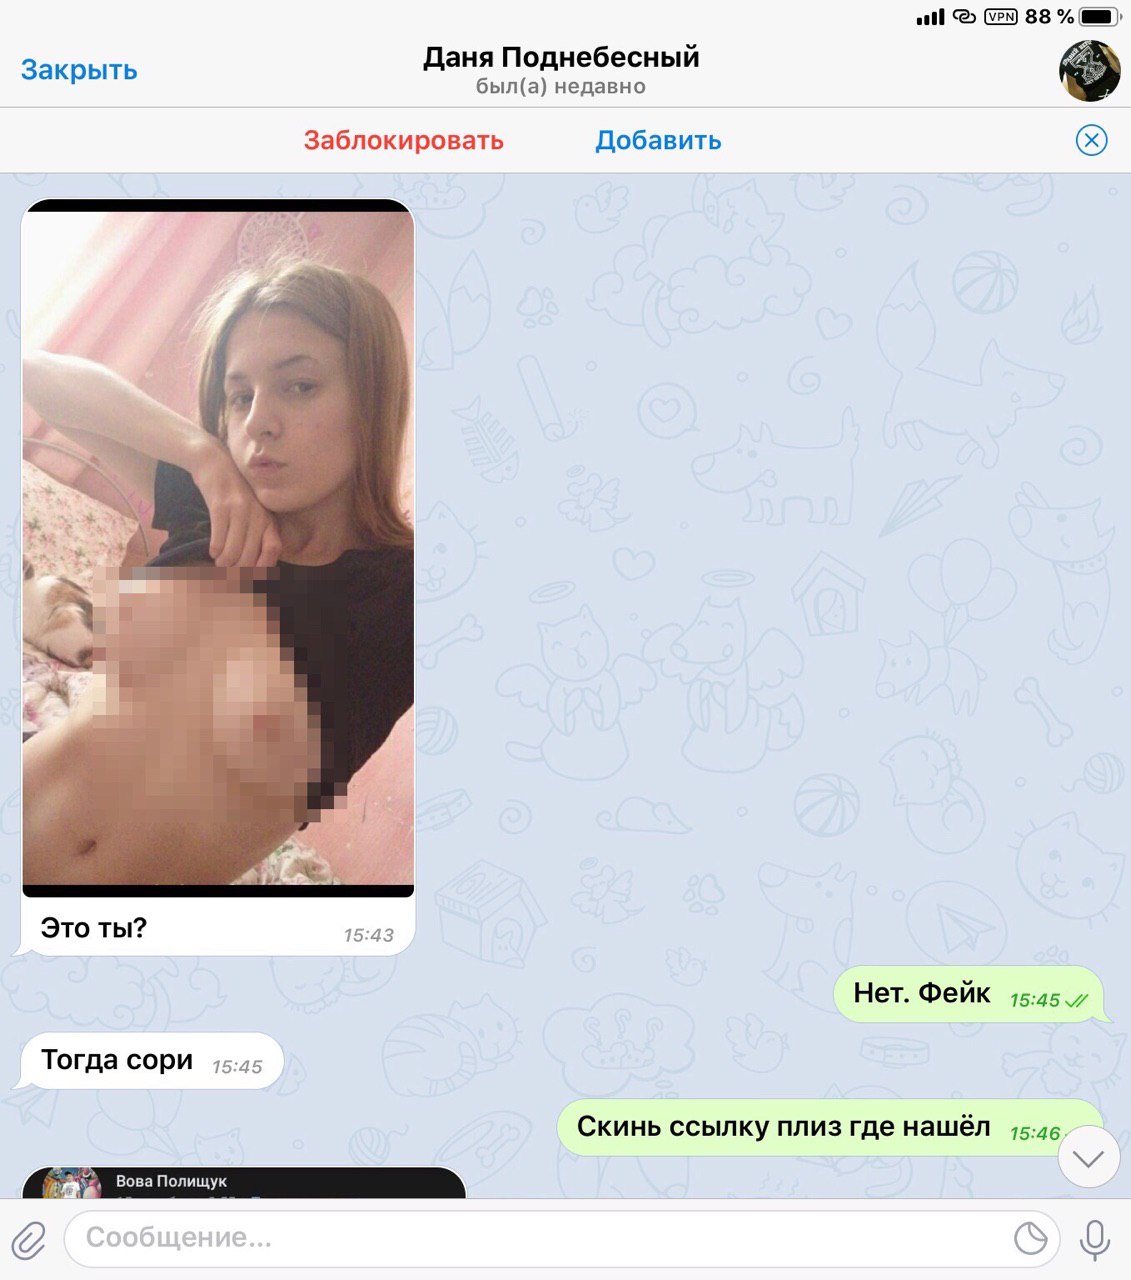 Порно Ролик В Телеграмме Русское